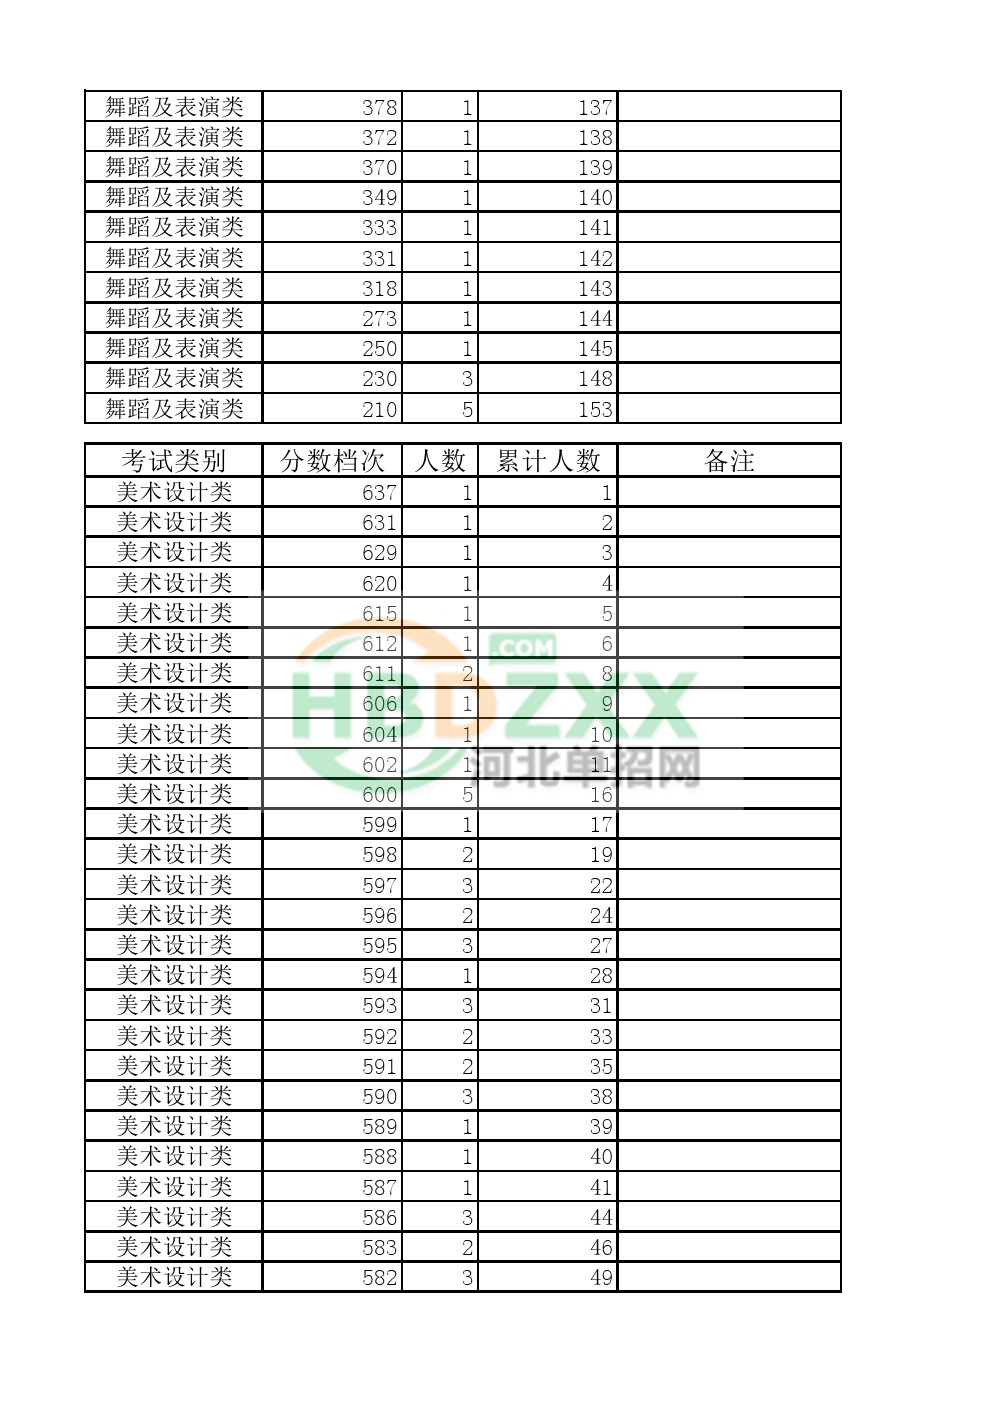 2017年河北省单独招生考试八类一分一档统计表